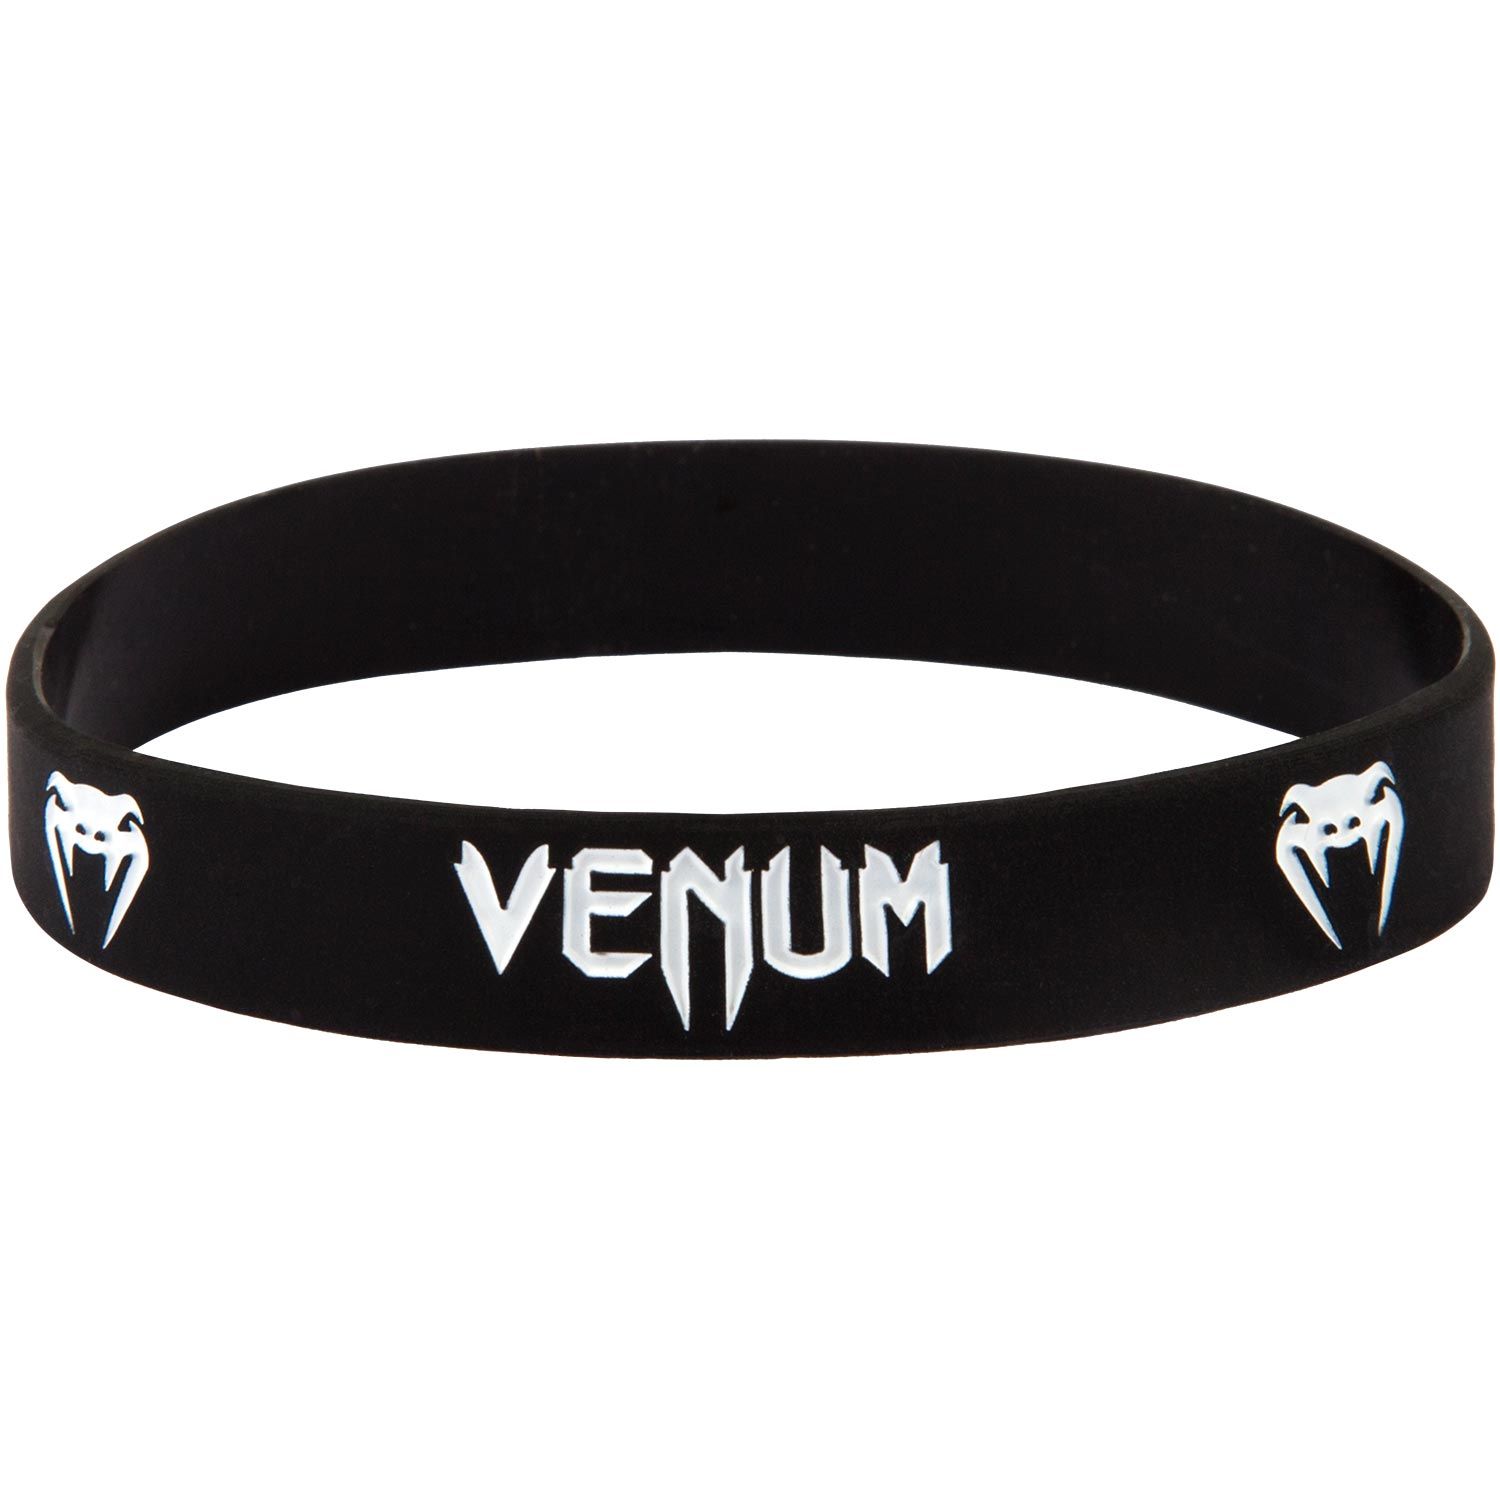 Bracelet Venum en silicone - Noir/Blanc